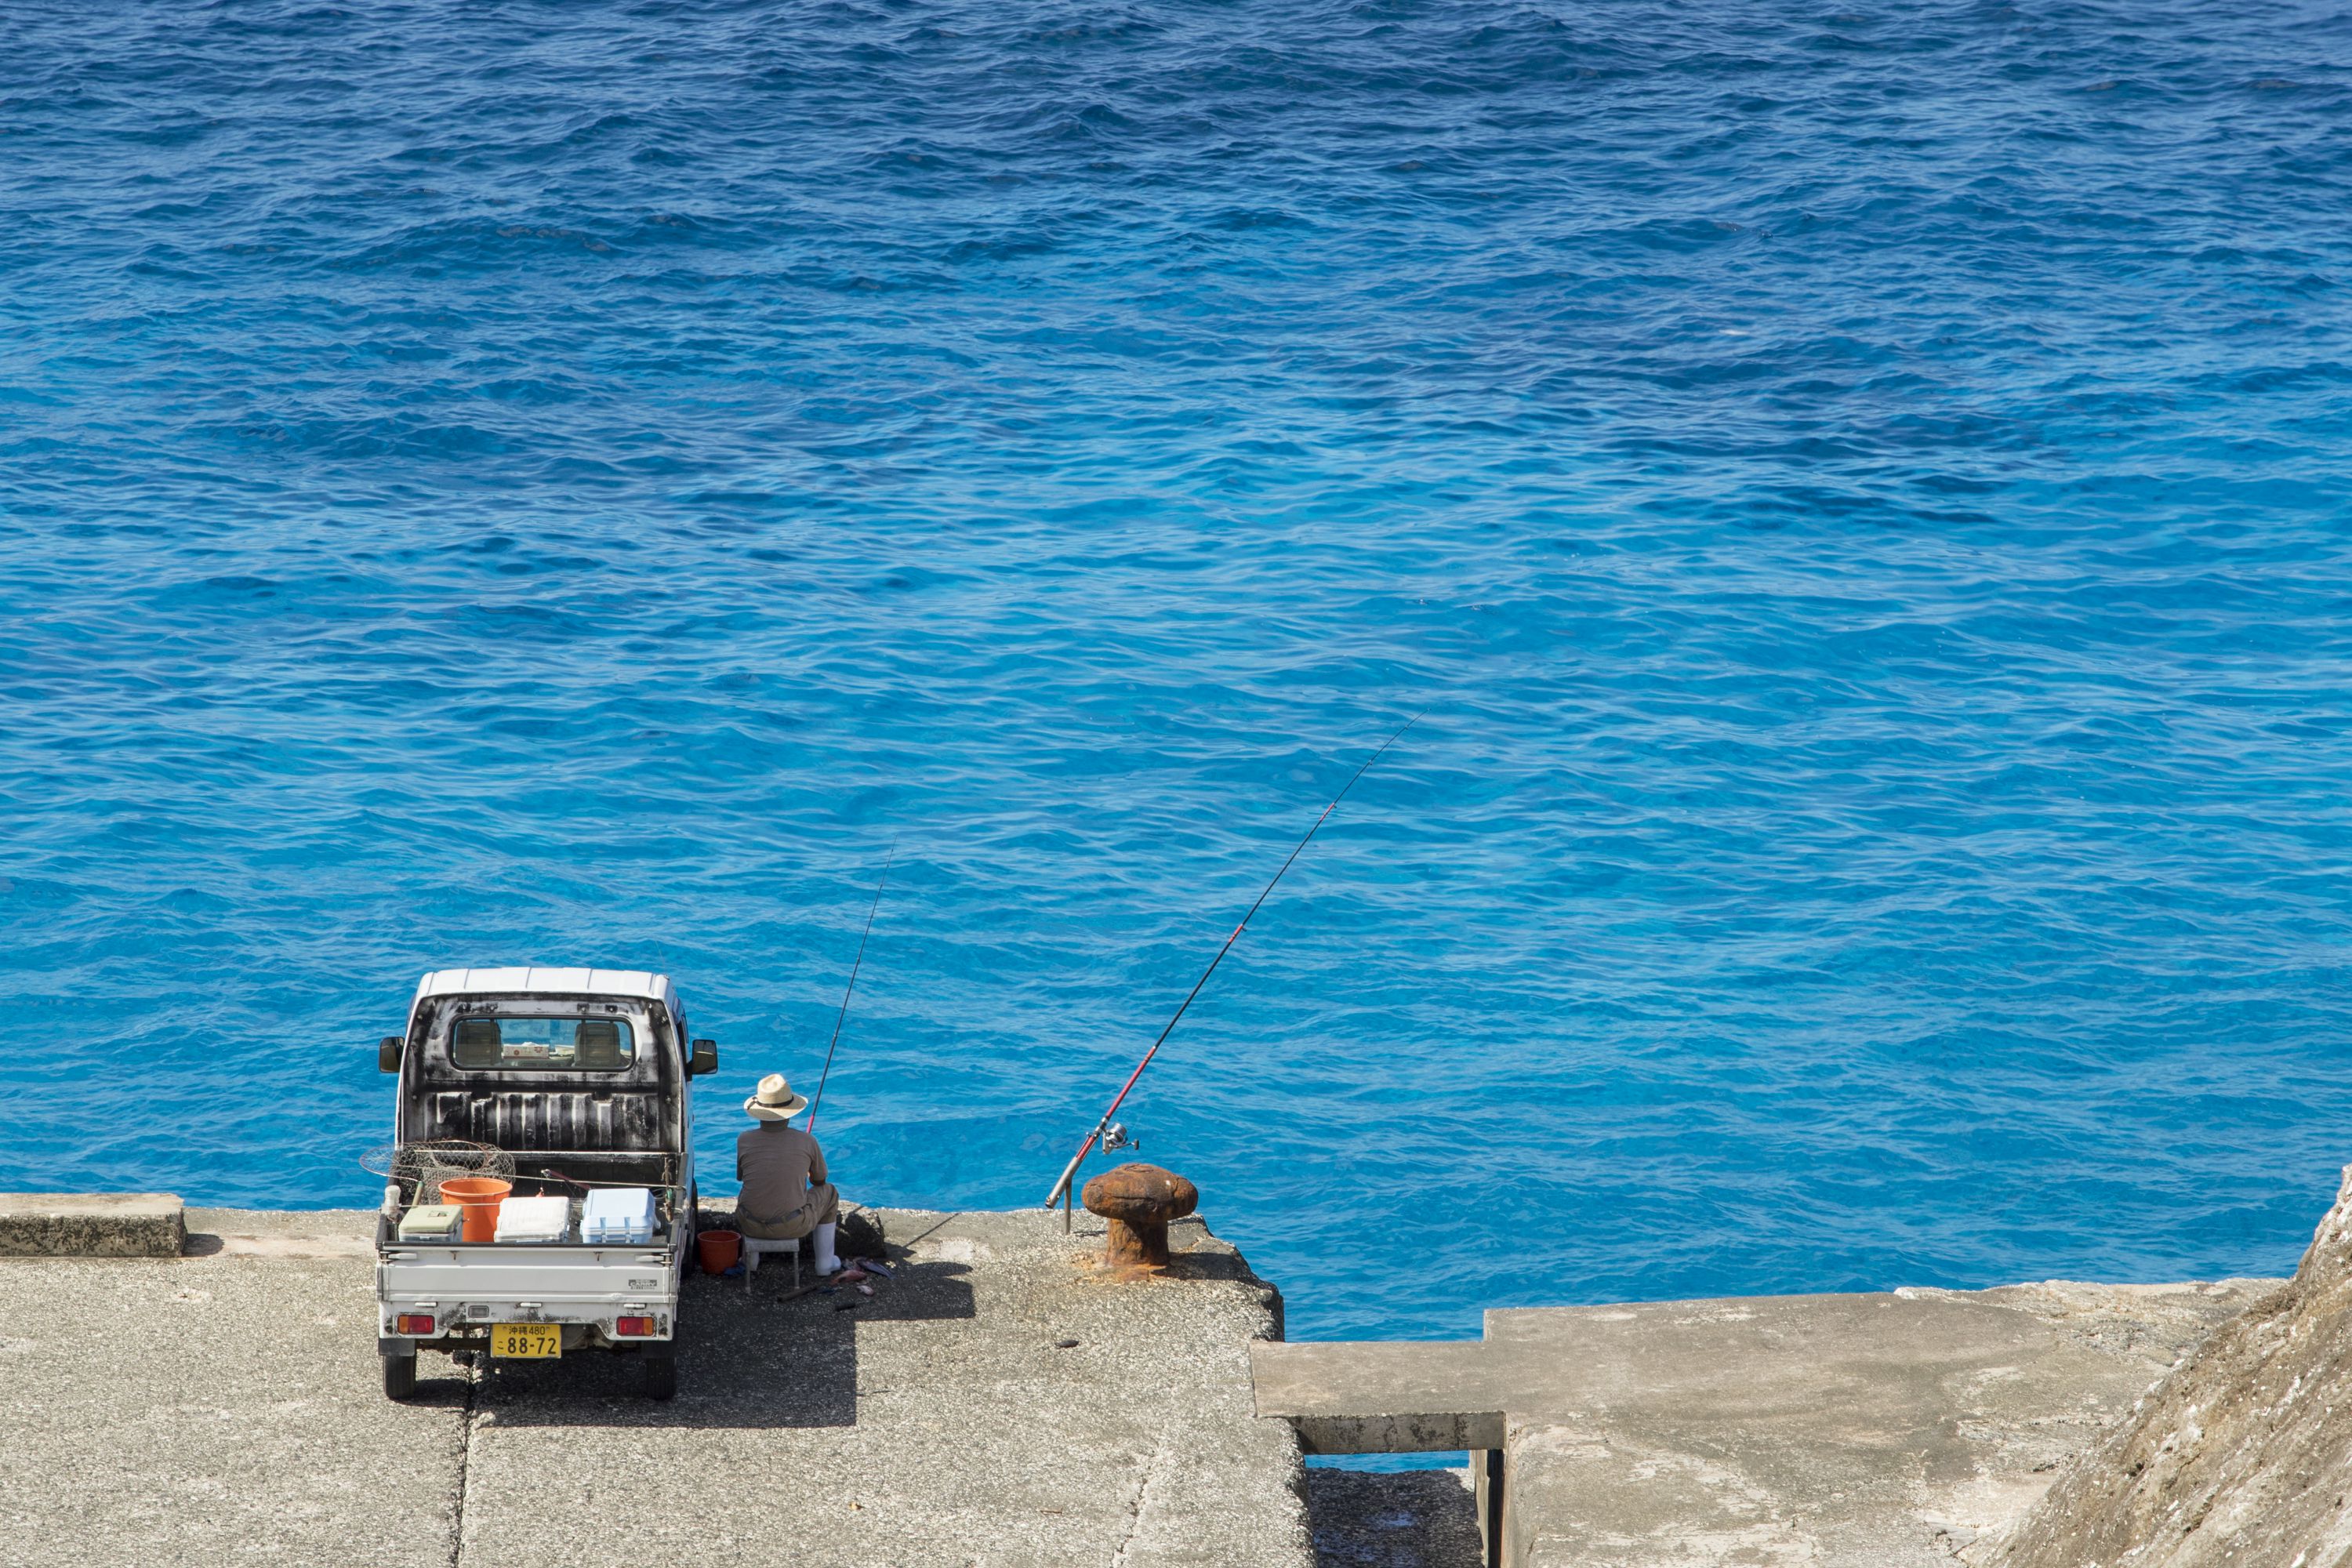 島全体が人気の海釣りスポット 沖縄最東端の北大東島で釣りの旅 沖縄離島専門の観光情報サイト リトハク